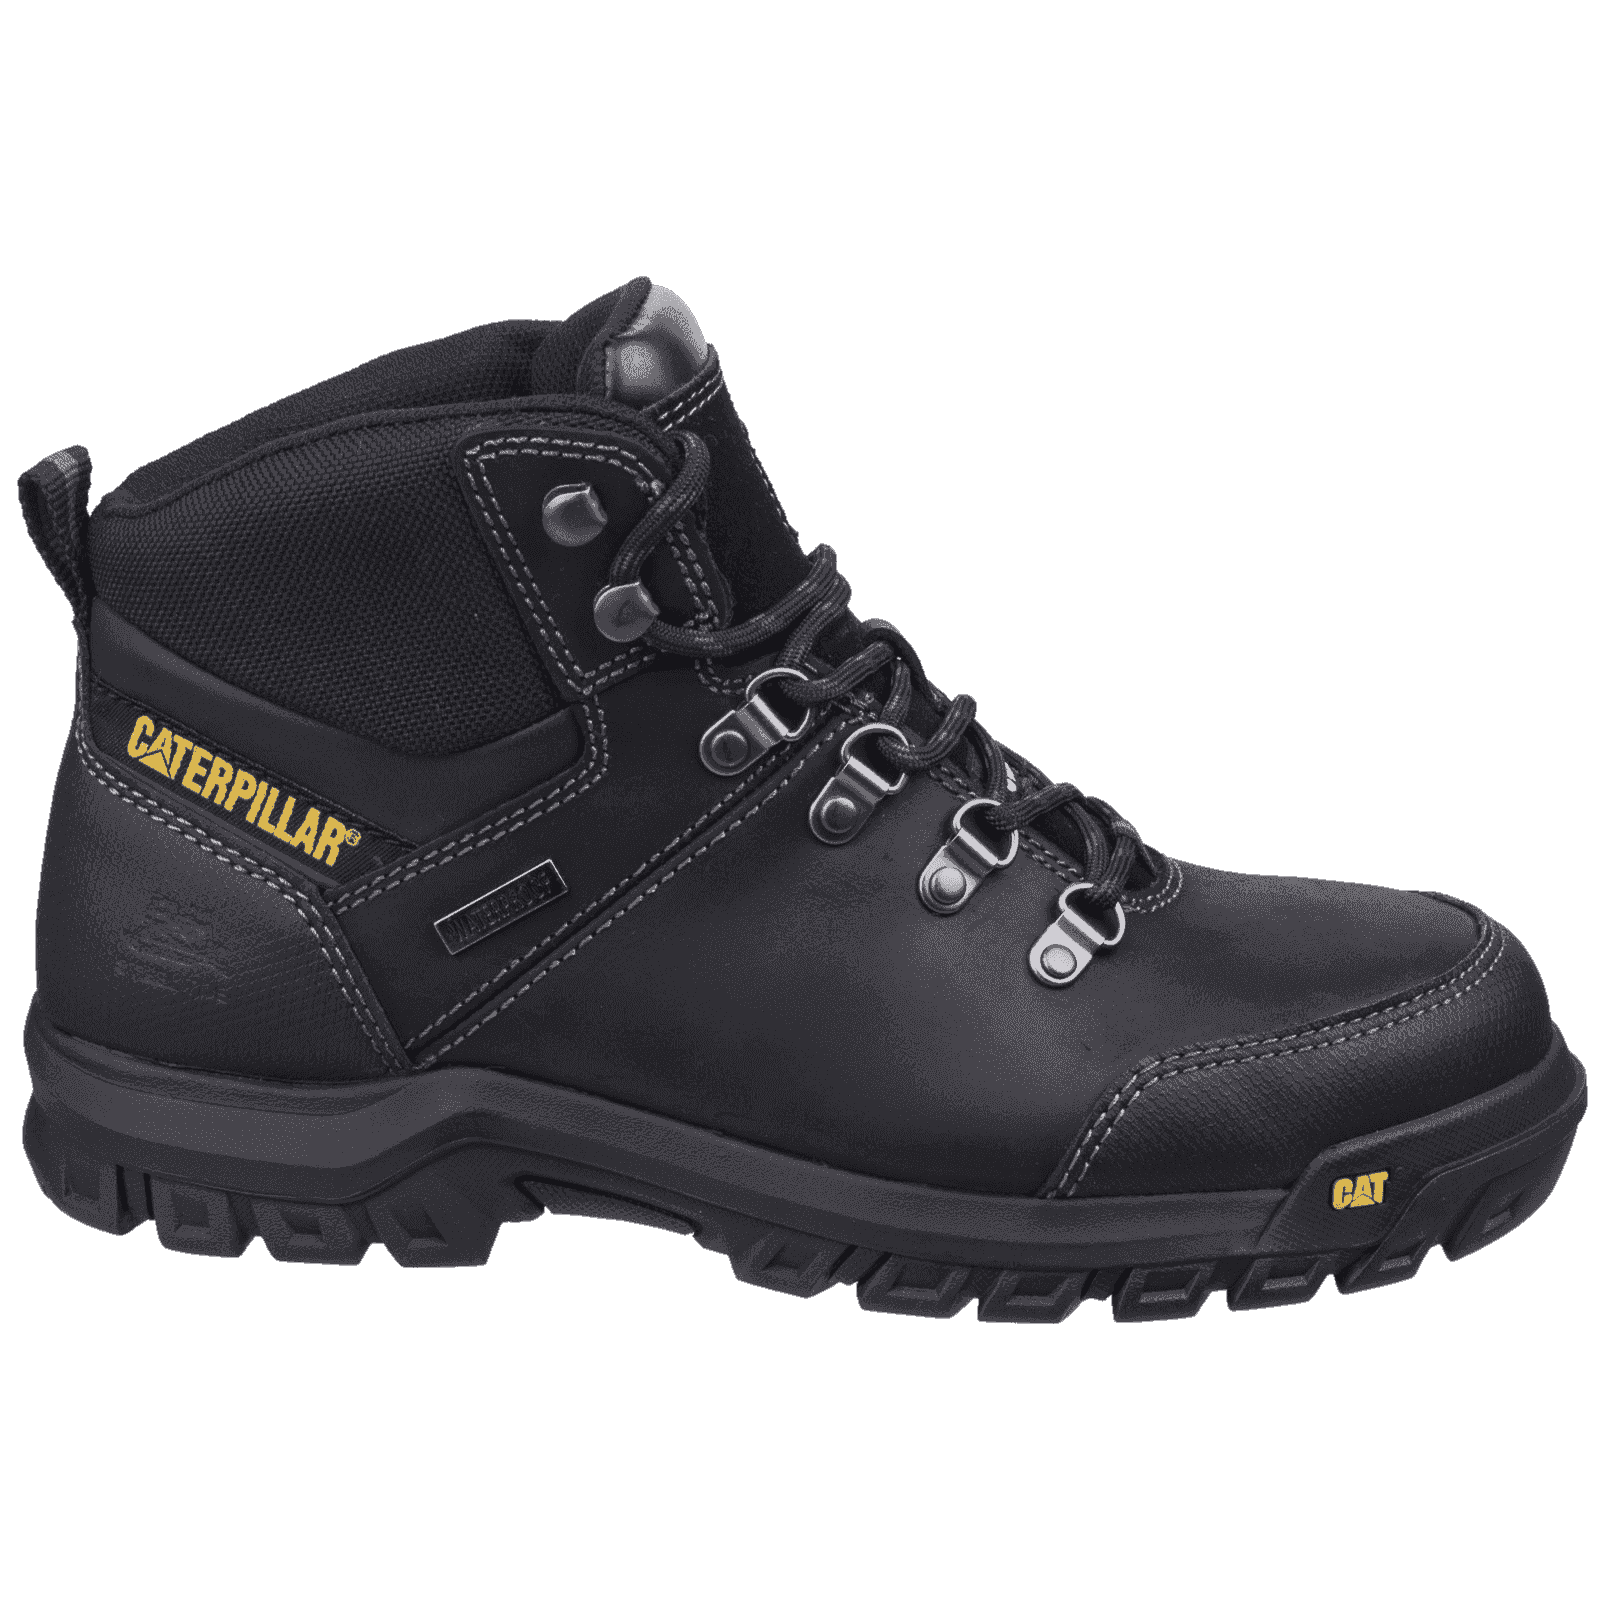 Framework S3 Safety Boots Caterpillar Black